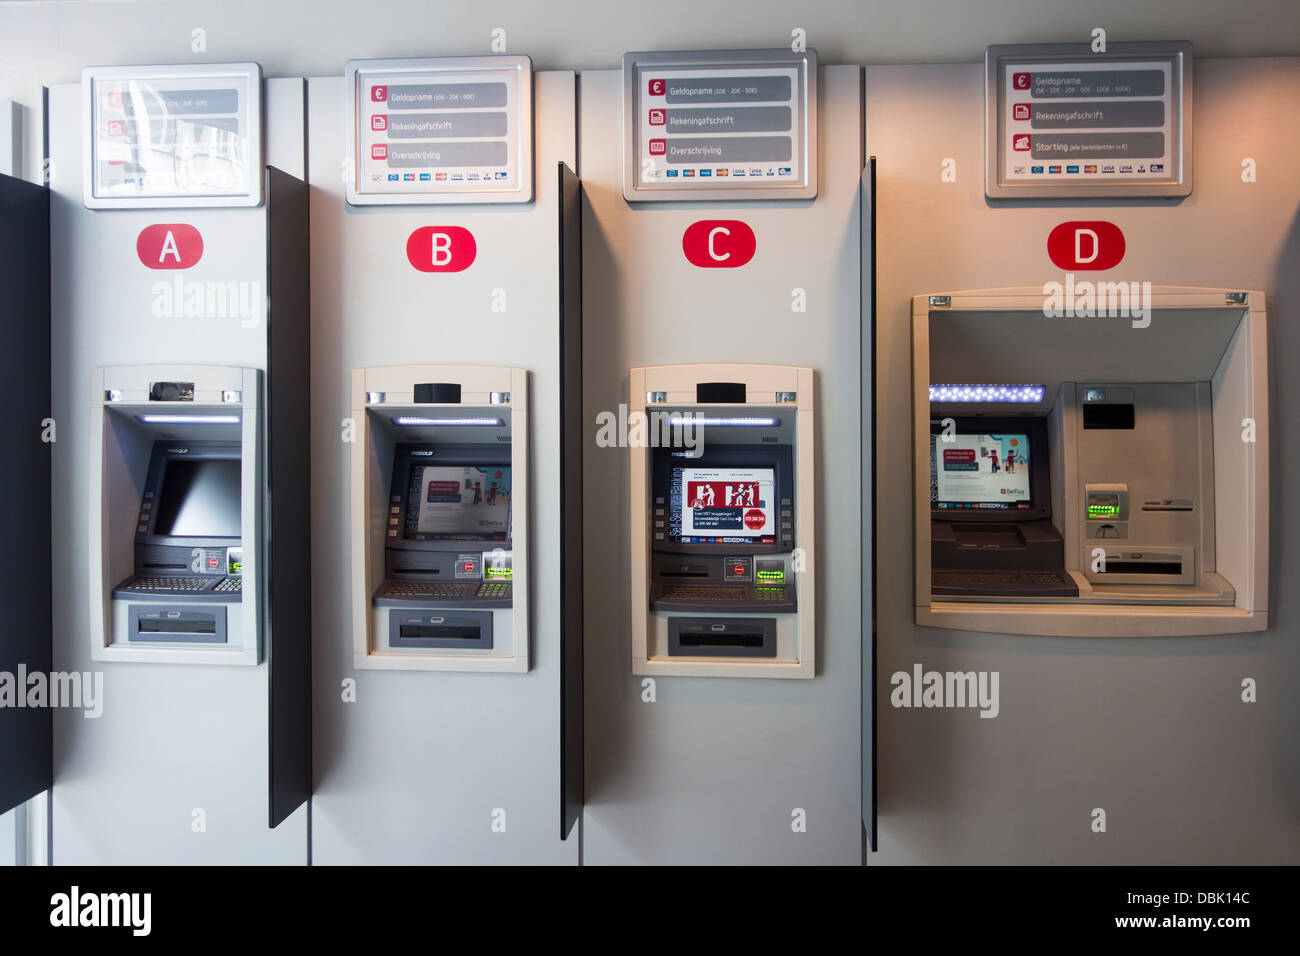 Indoor ATM cash dispensers at cashpoint of the Belgian Belfius bank, Belgium Stock Photo